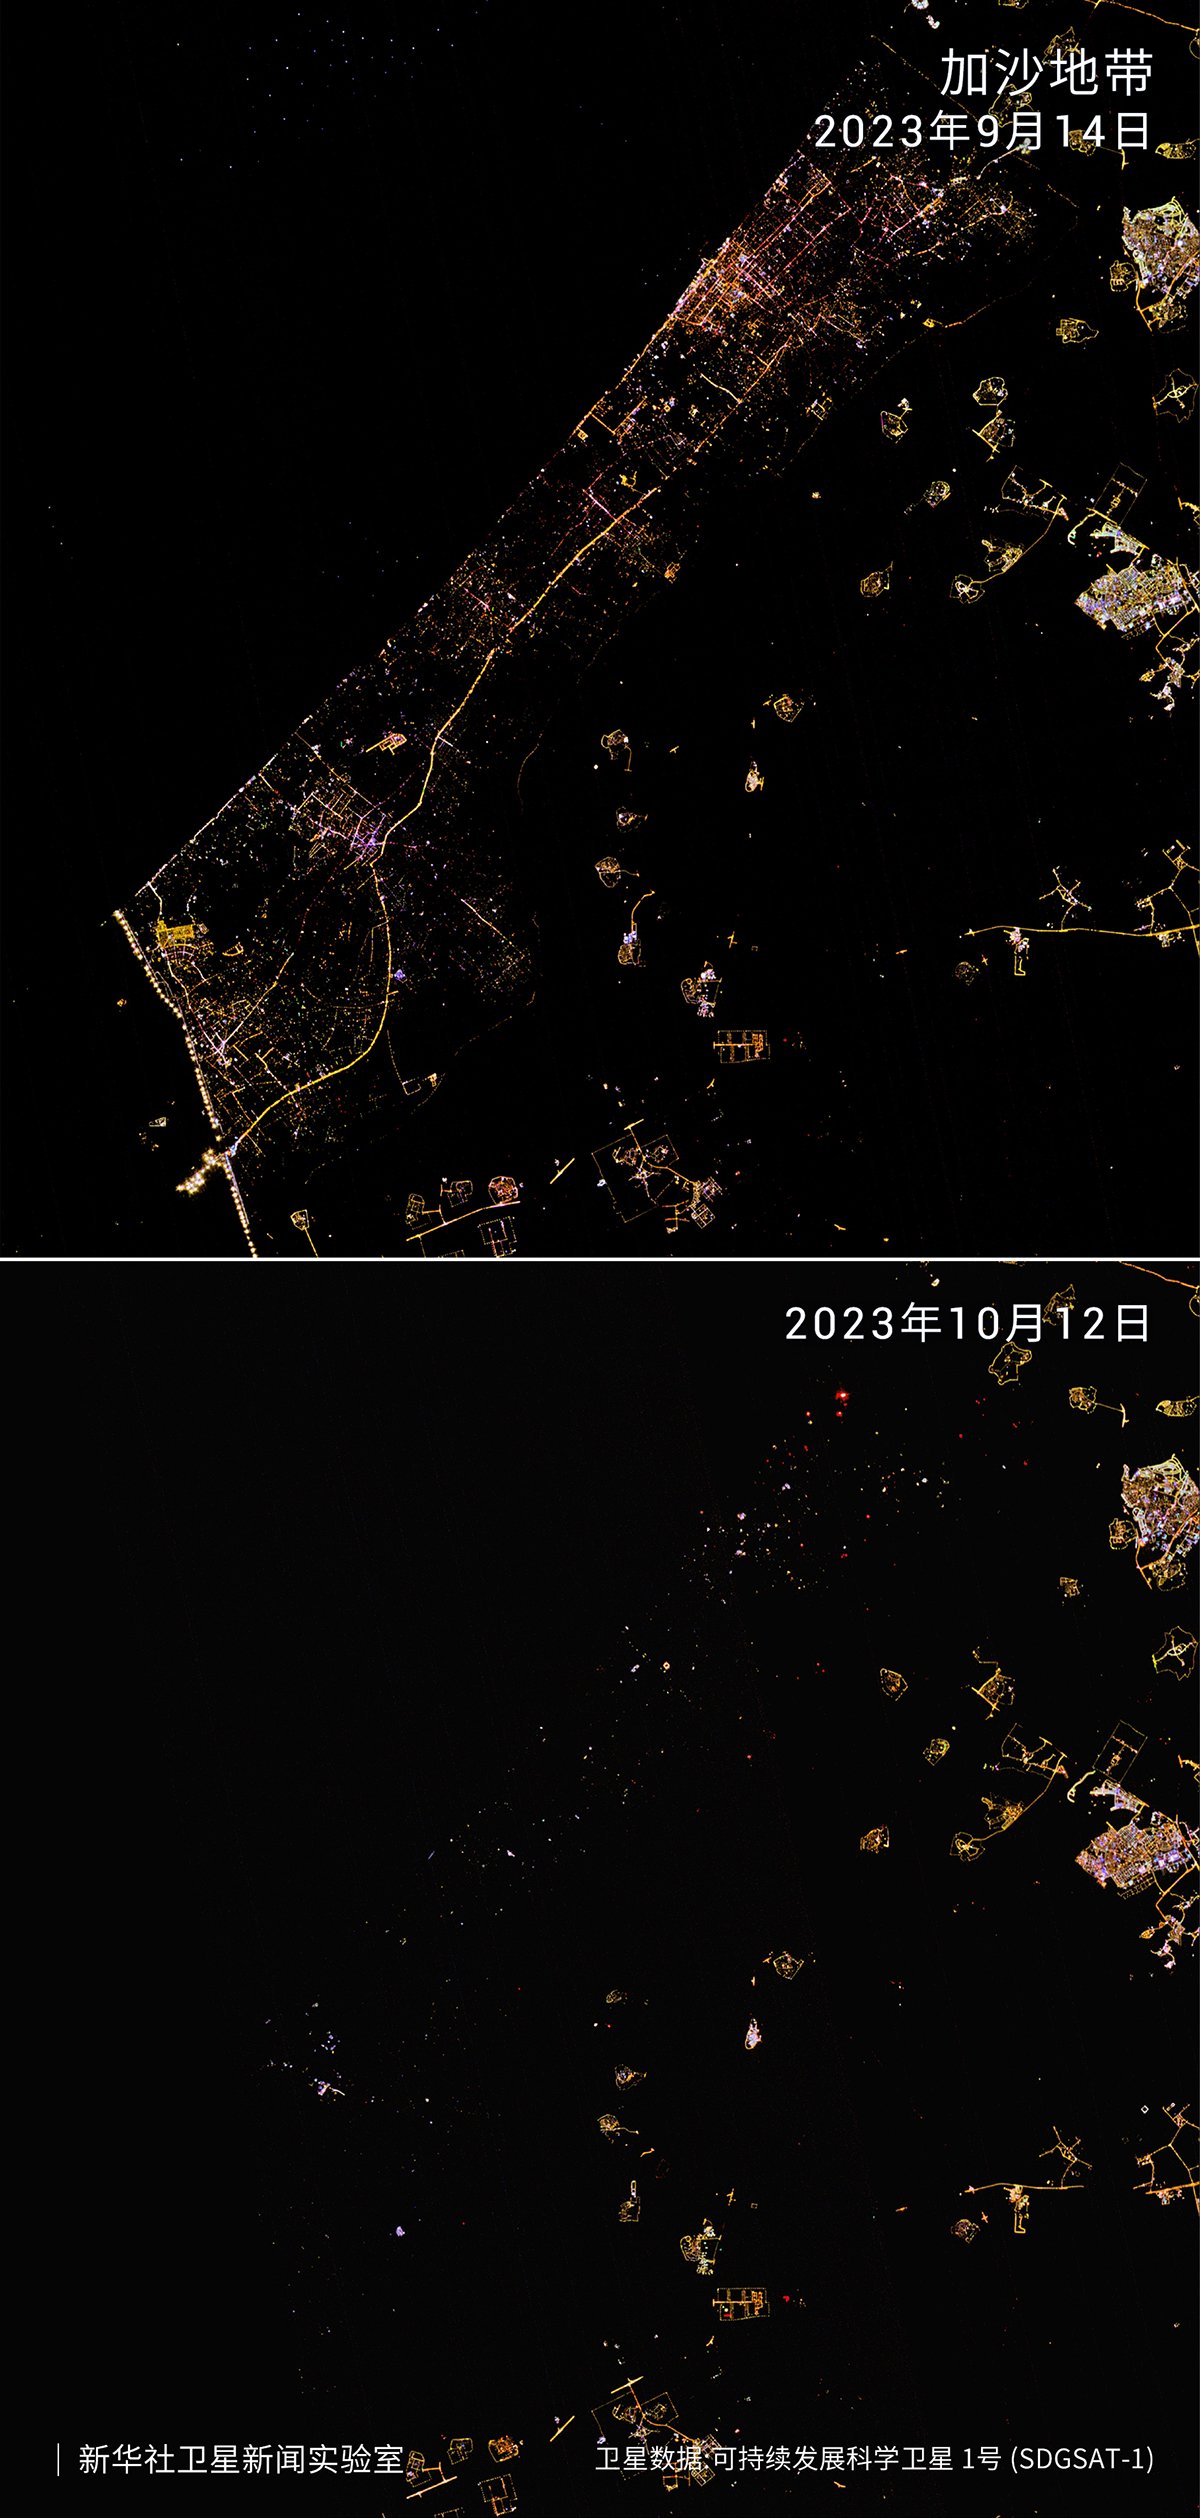 卫星影像显示当地时间9月14日（上）和10月12日（下）的加沙地带及周边地区夜景画面。